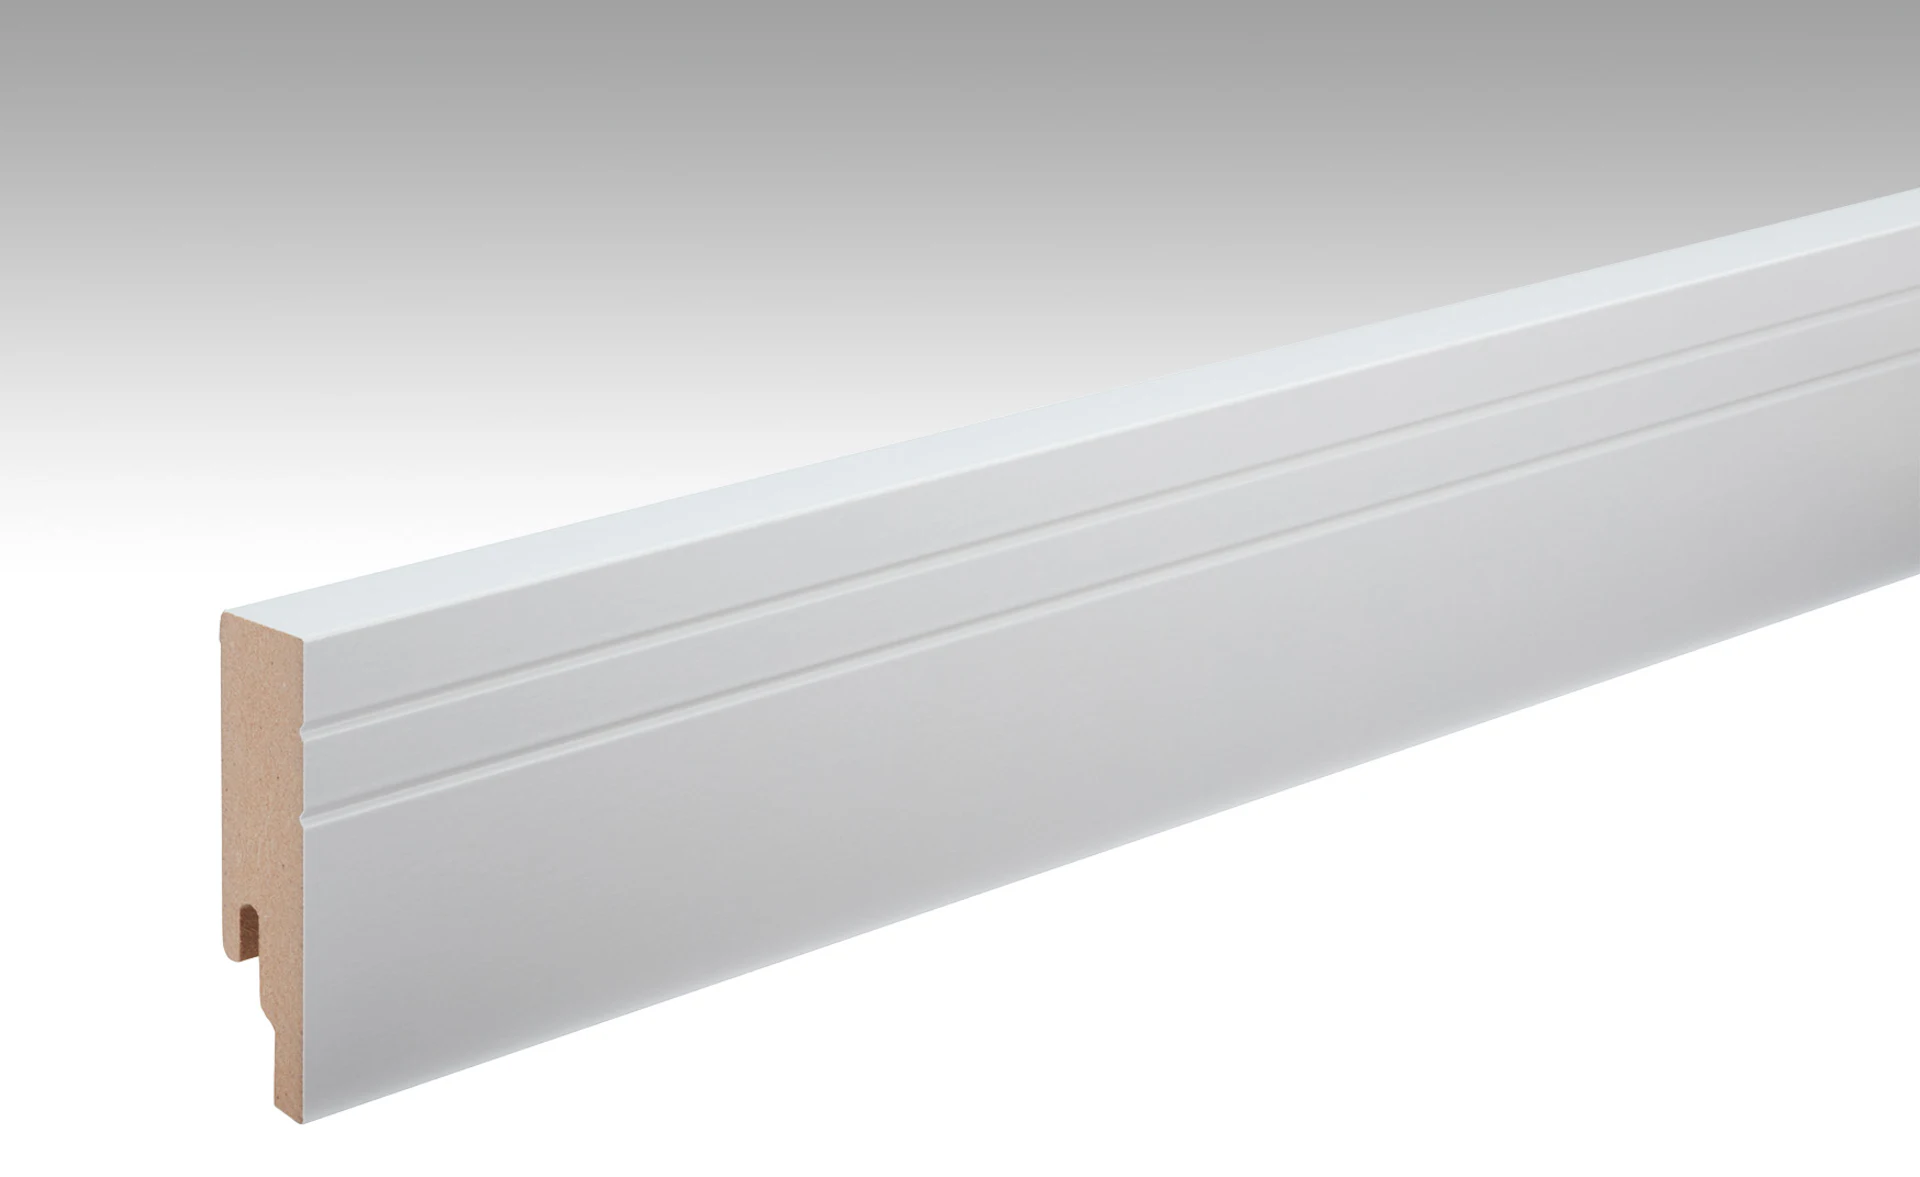 MEISTER Sockelleisten Fußleisten Uni weiß glänzend DF 324 - 2380 x 80 x 18 mm (200018-2380-00324)